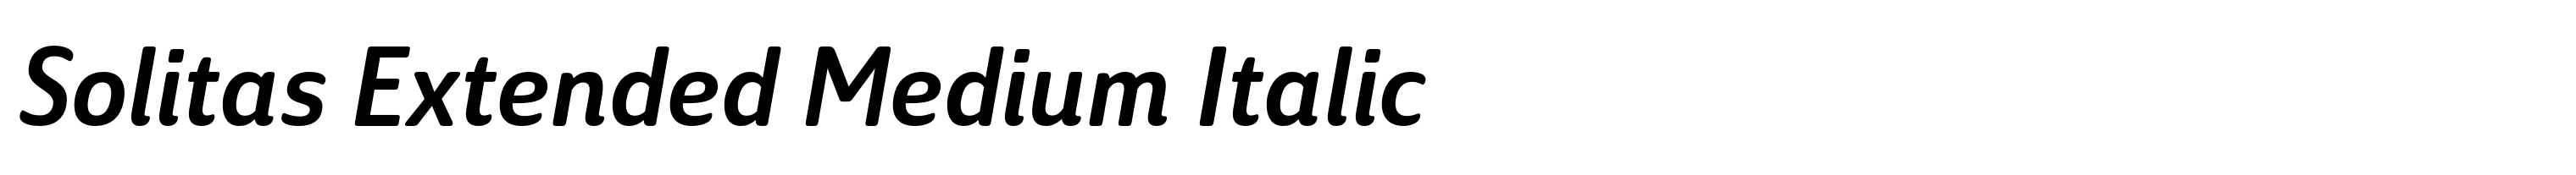 Solitas Extended Medium Italic